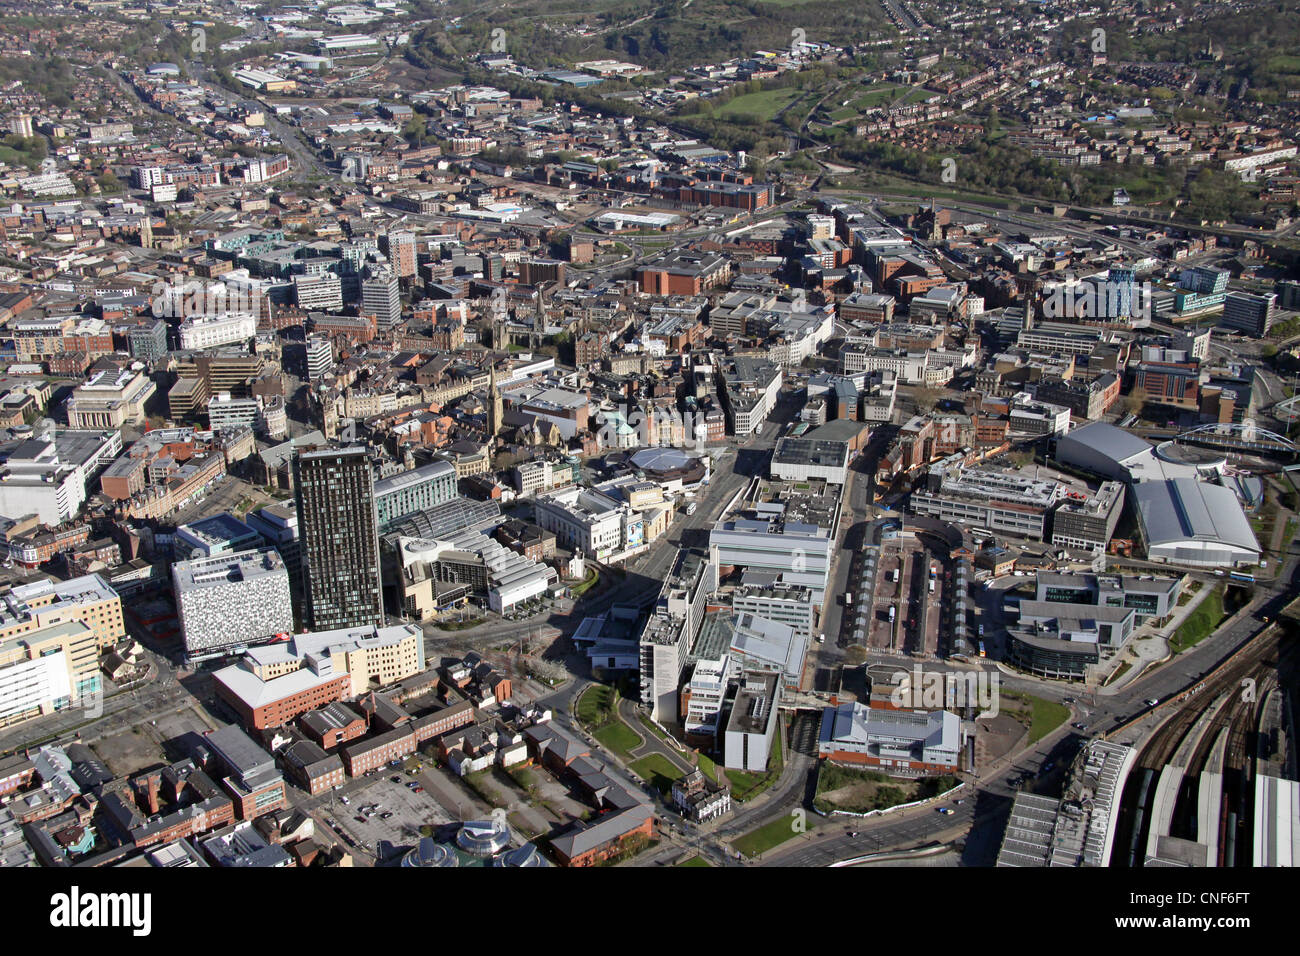 Vue aérienne du centre-ville de Sheffield, vue vers le nord, avec les bâtiments de l'université de Sheffield Hallam en vue et la gare juste en bas à droite Banque D'Images